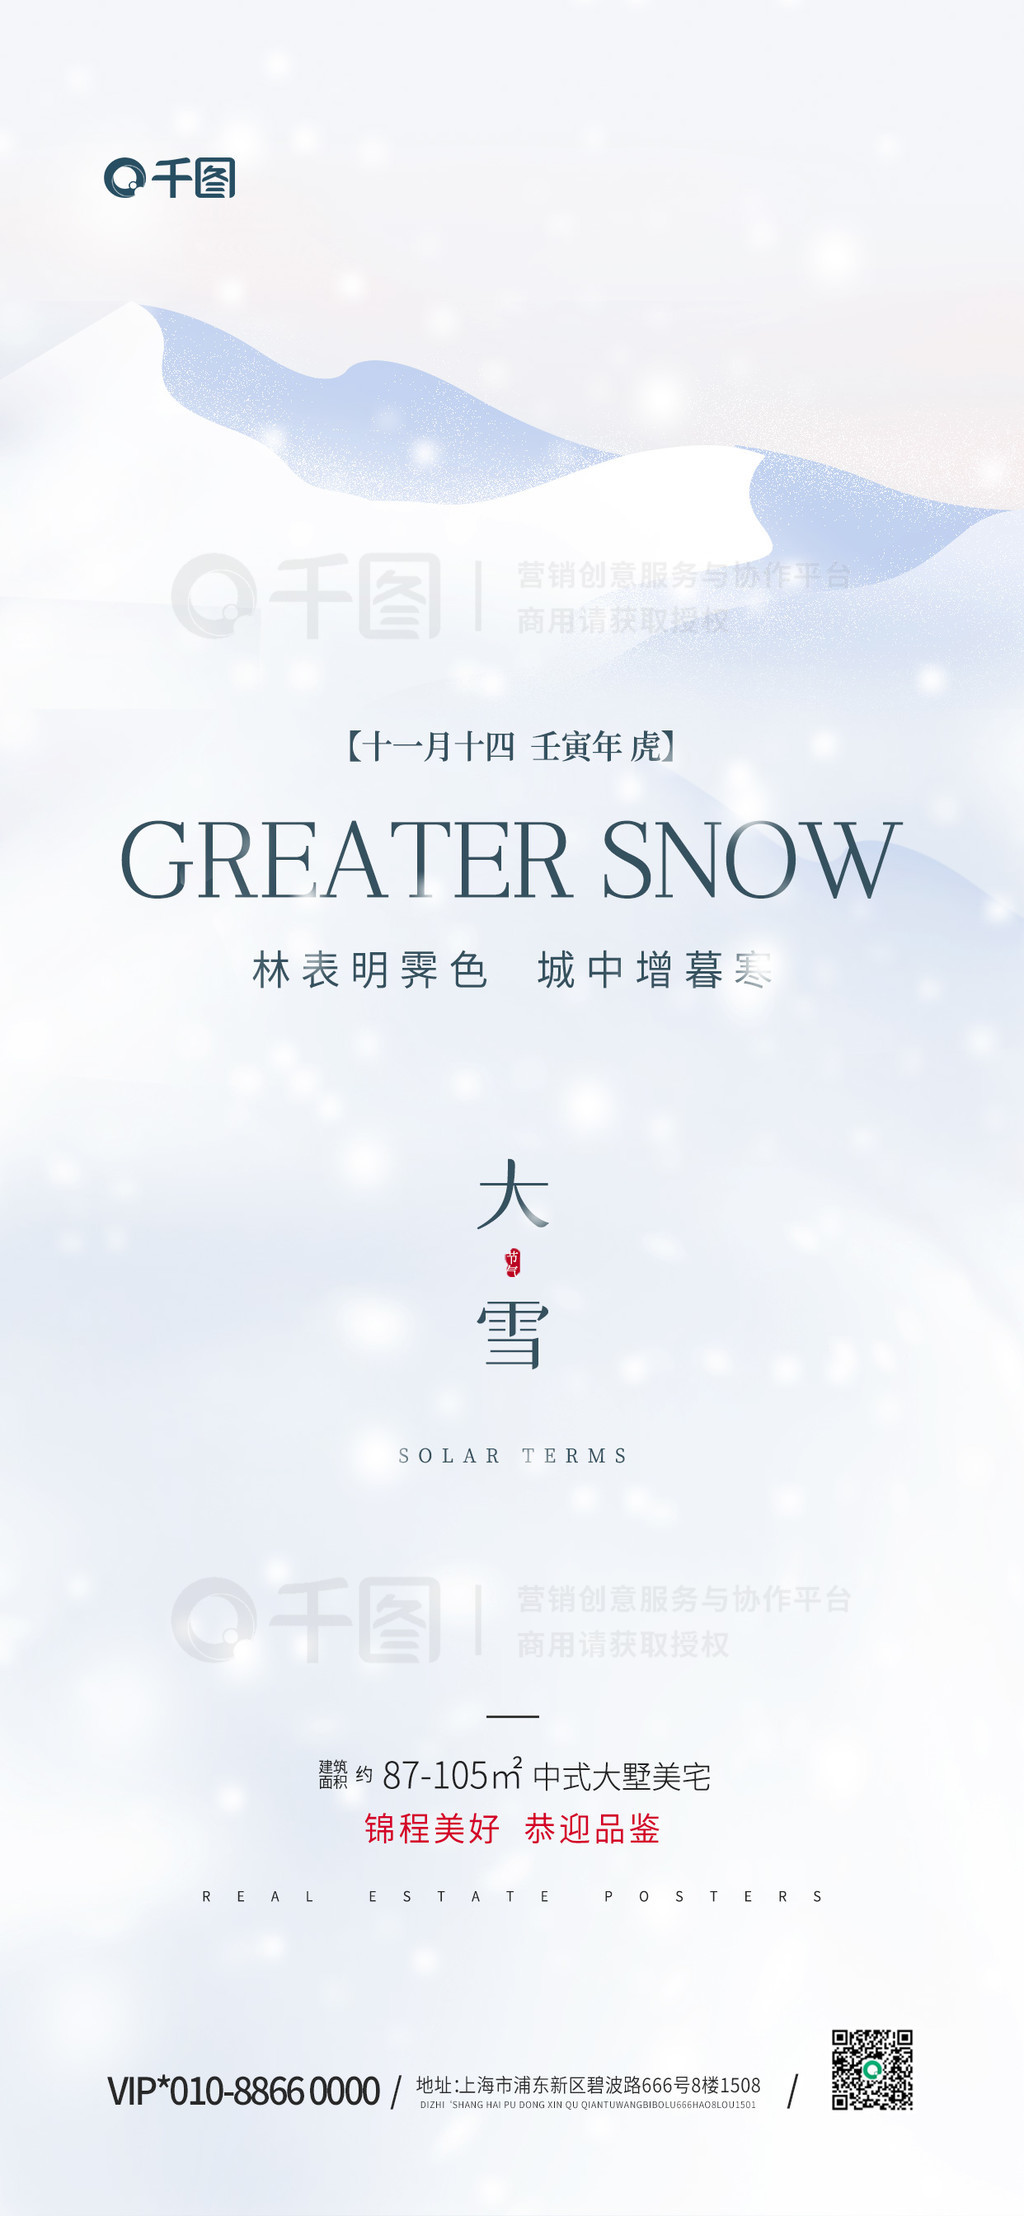 极简创意大雪传统节气房地产营销海报